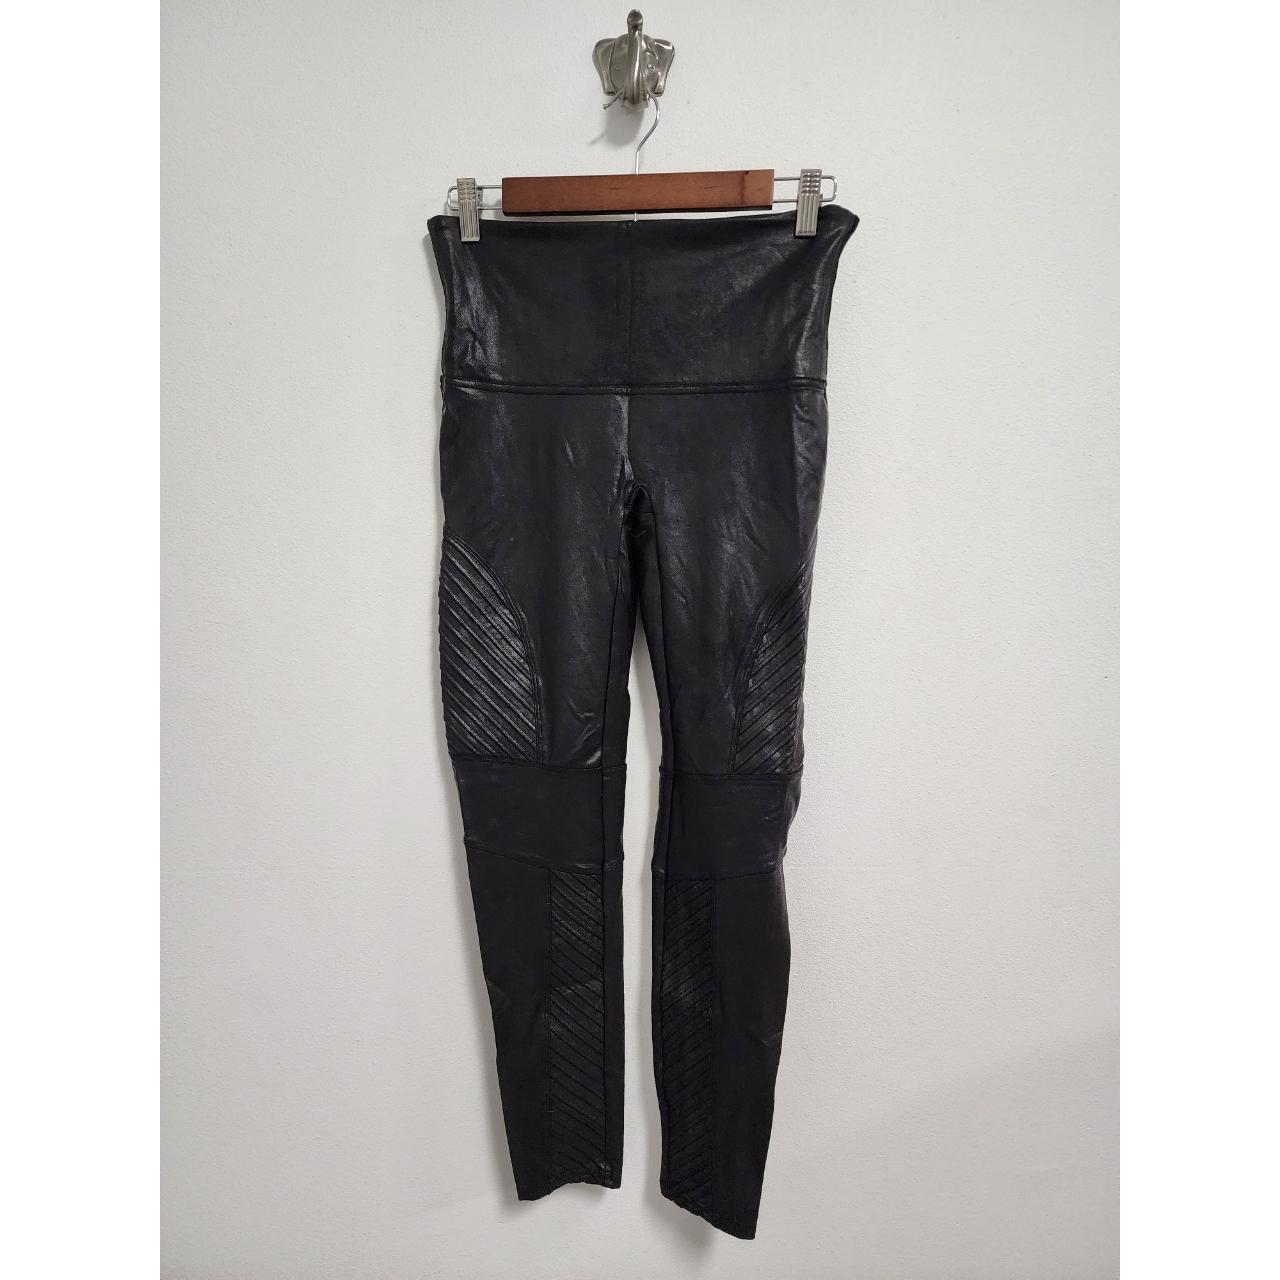 Spanx very black faux moto leggings XL, 20136r, ⚫Size